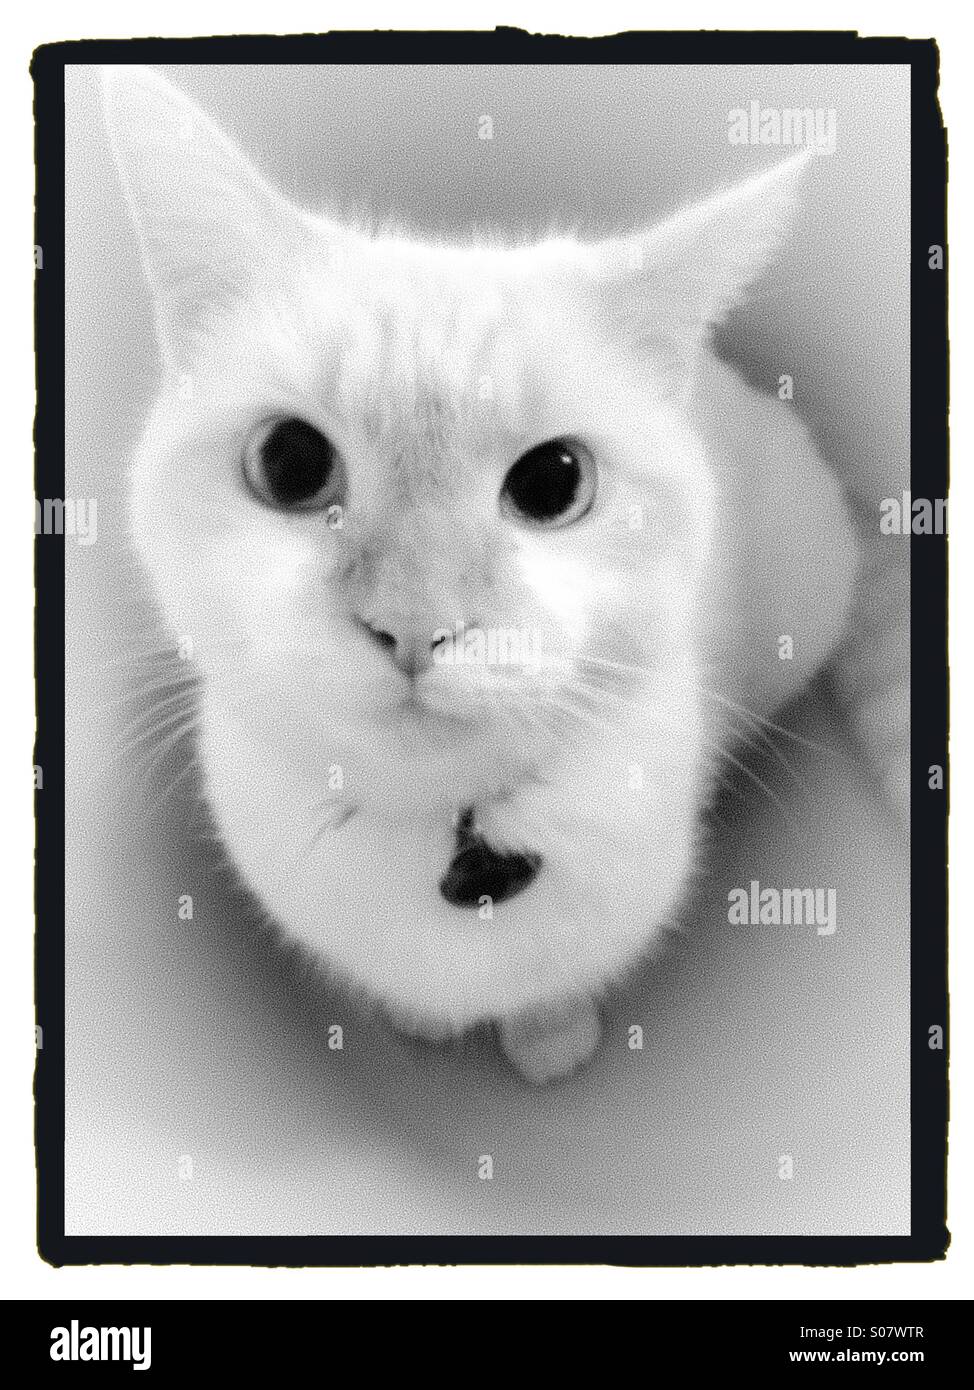 White cat portrait Stock Photo